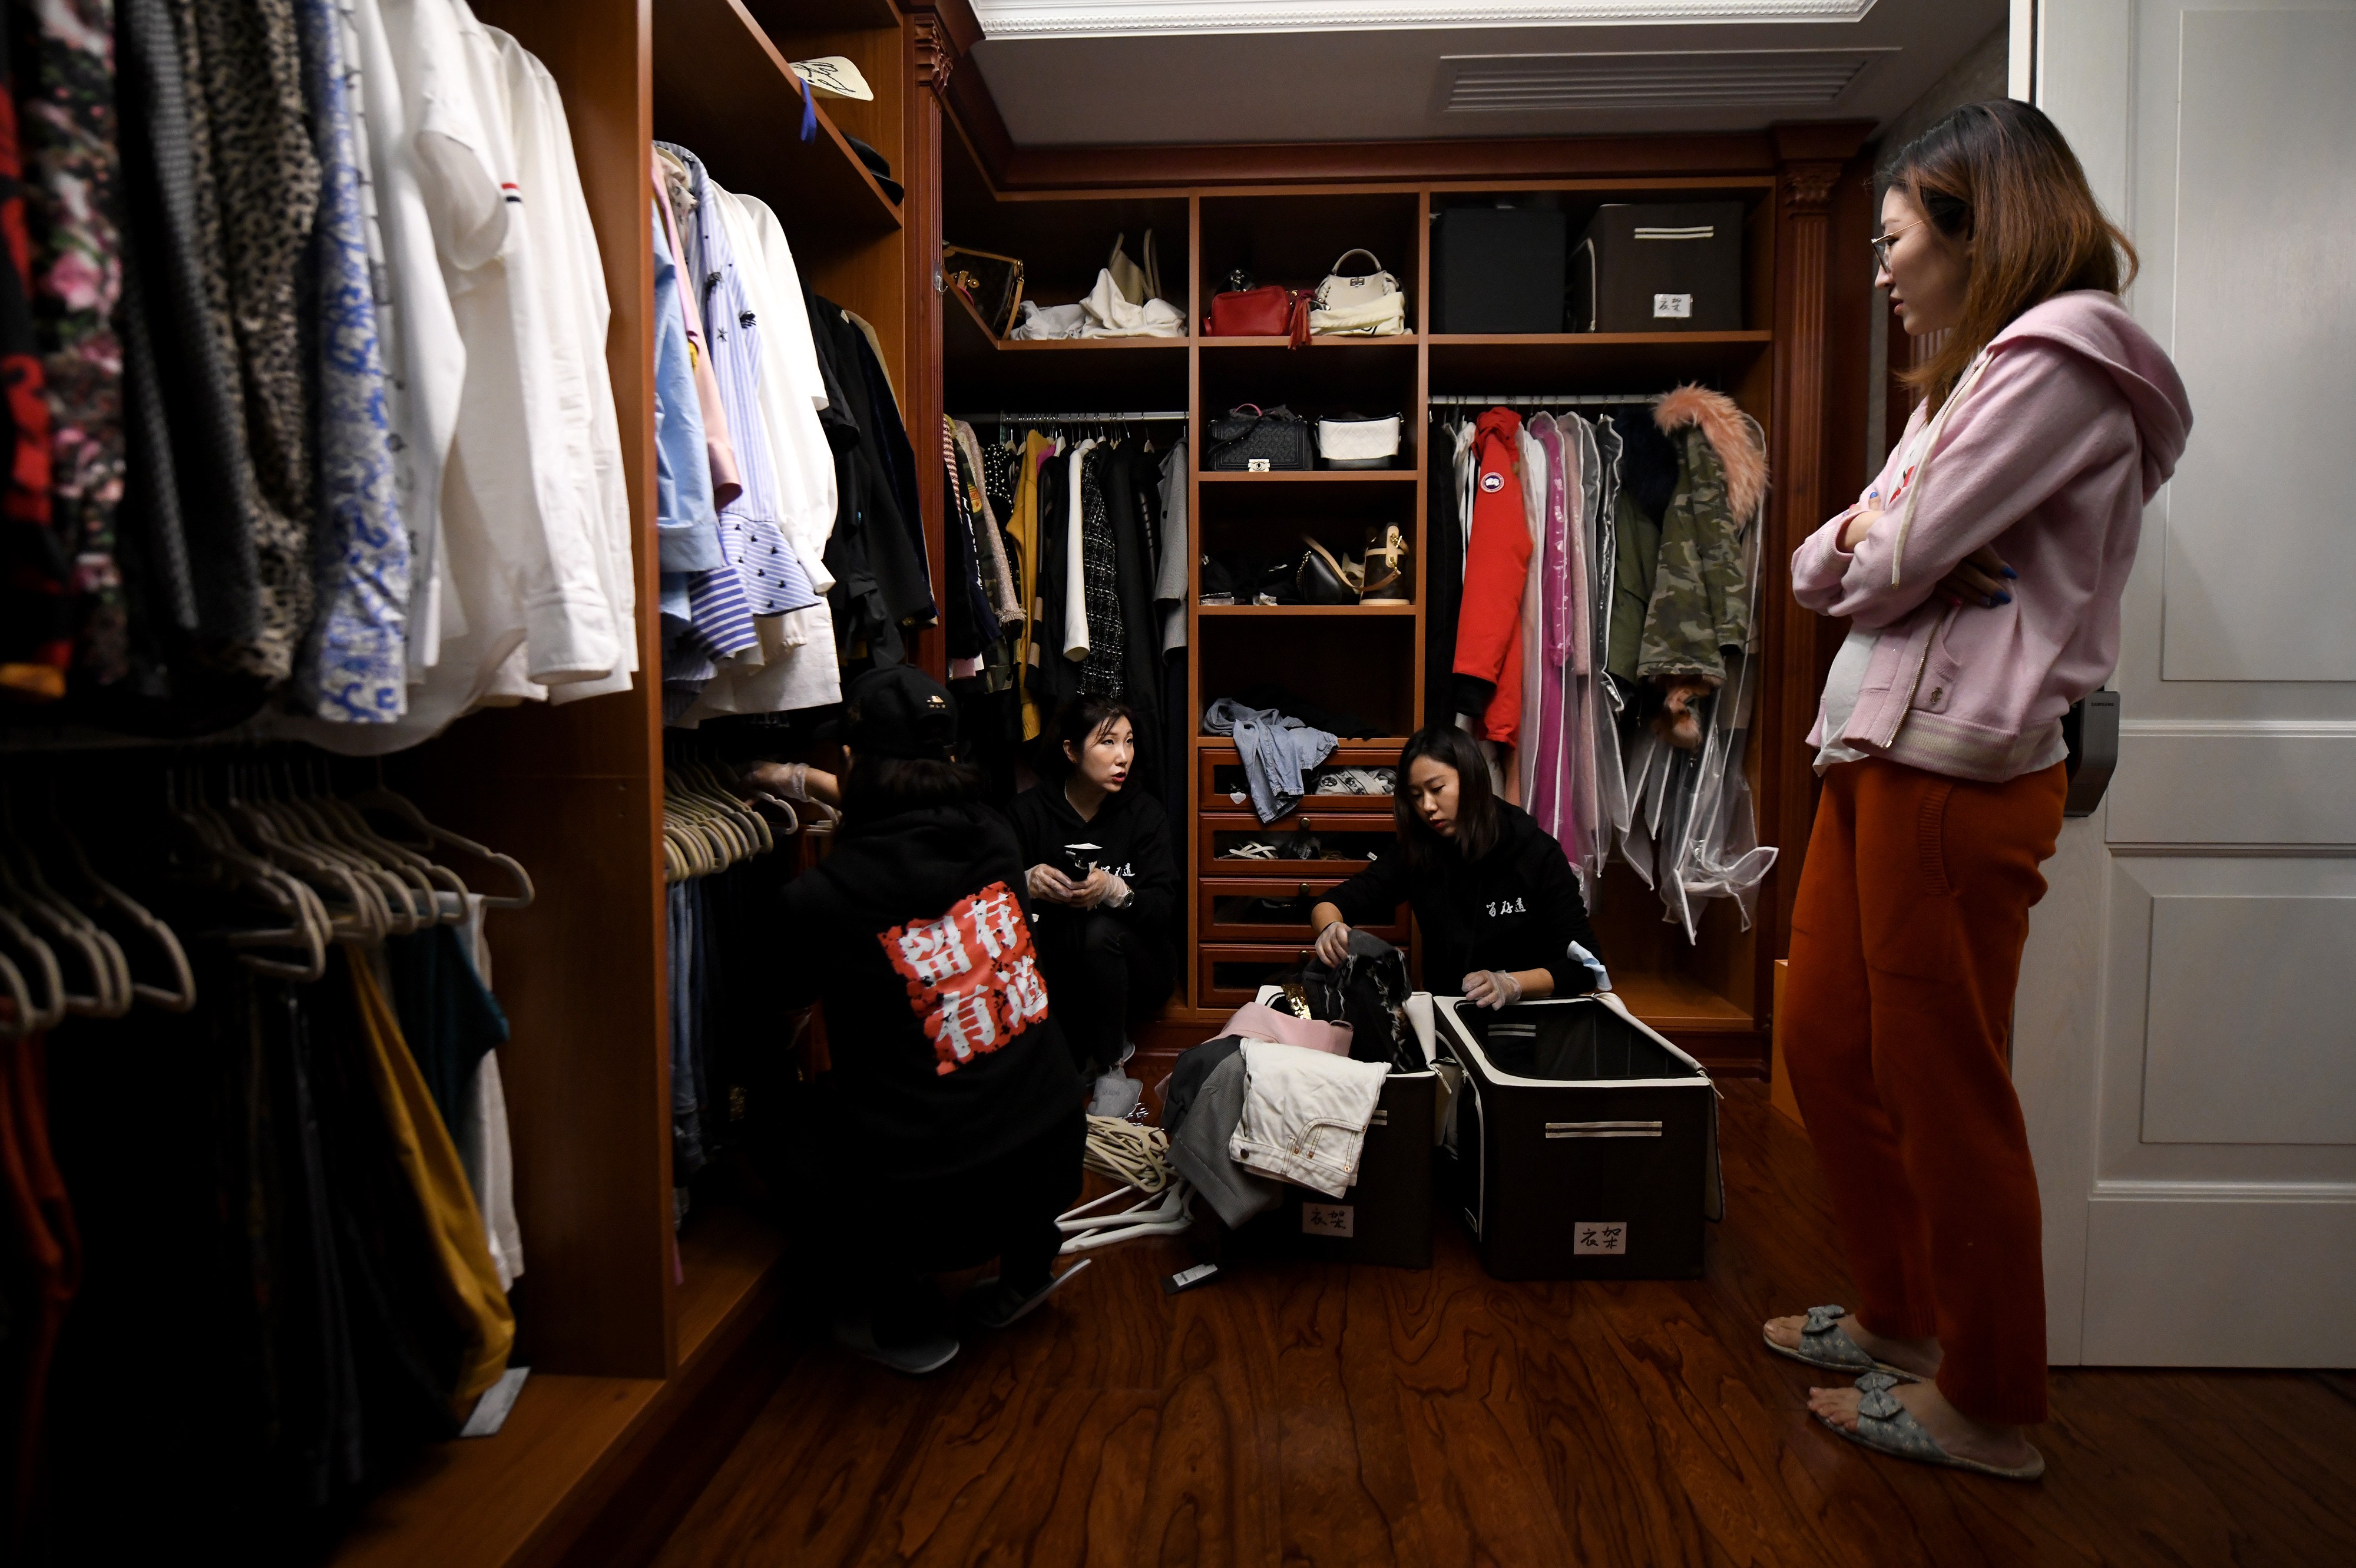 Chineses ricos recorrem a especialistas da arrumação para organizar seus guarda-roupas